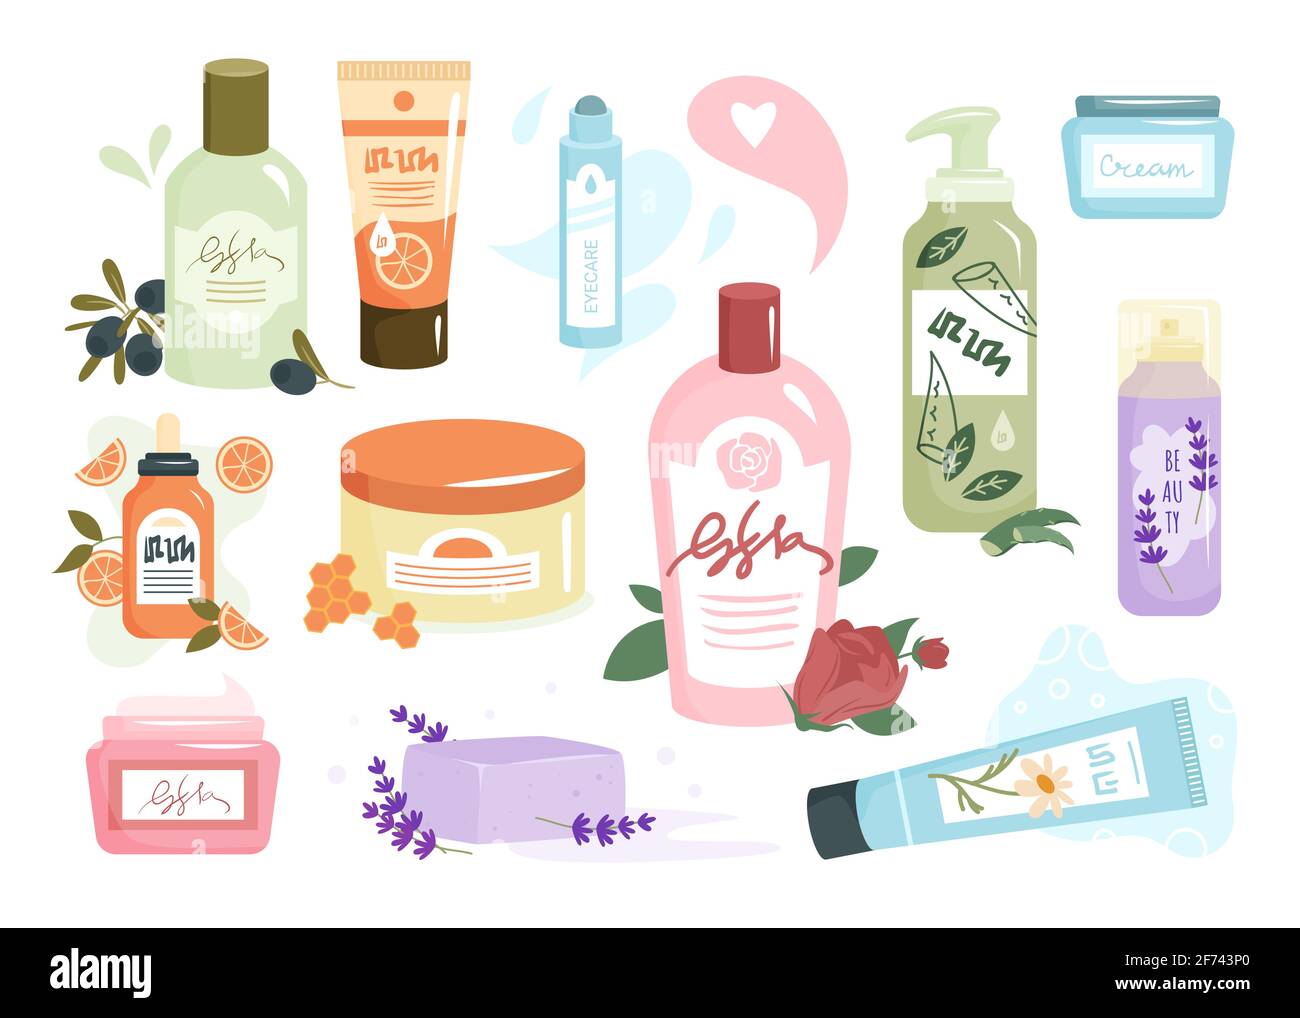 Öko Kosmetik für Hautpflege-Set, Bio Shampoo Duschgel, Aromareiniger, Gesichtscreme Stock Vektor